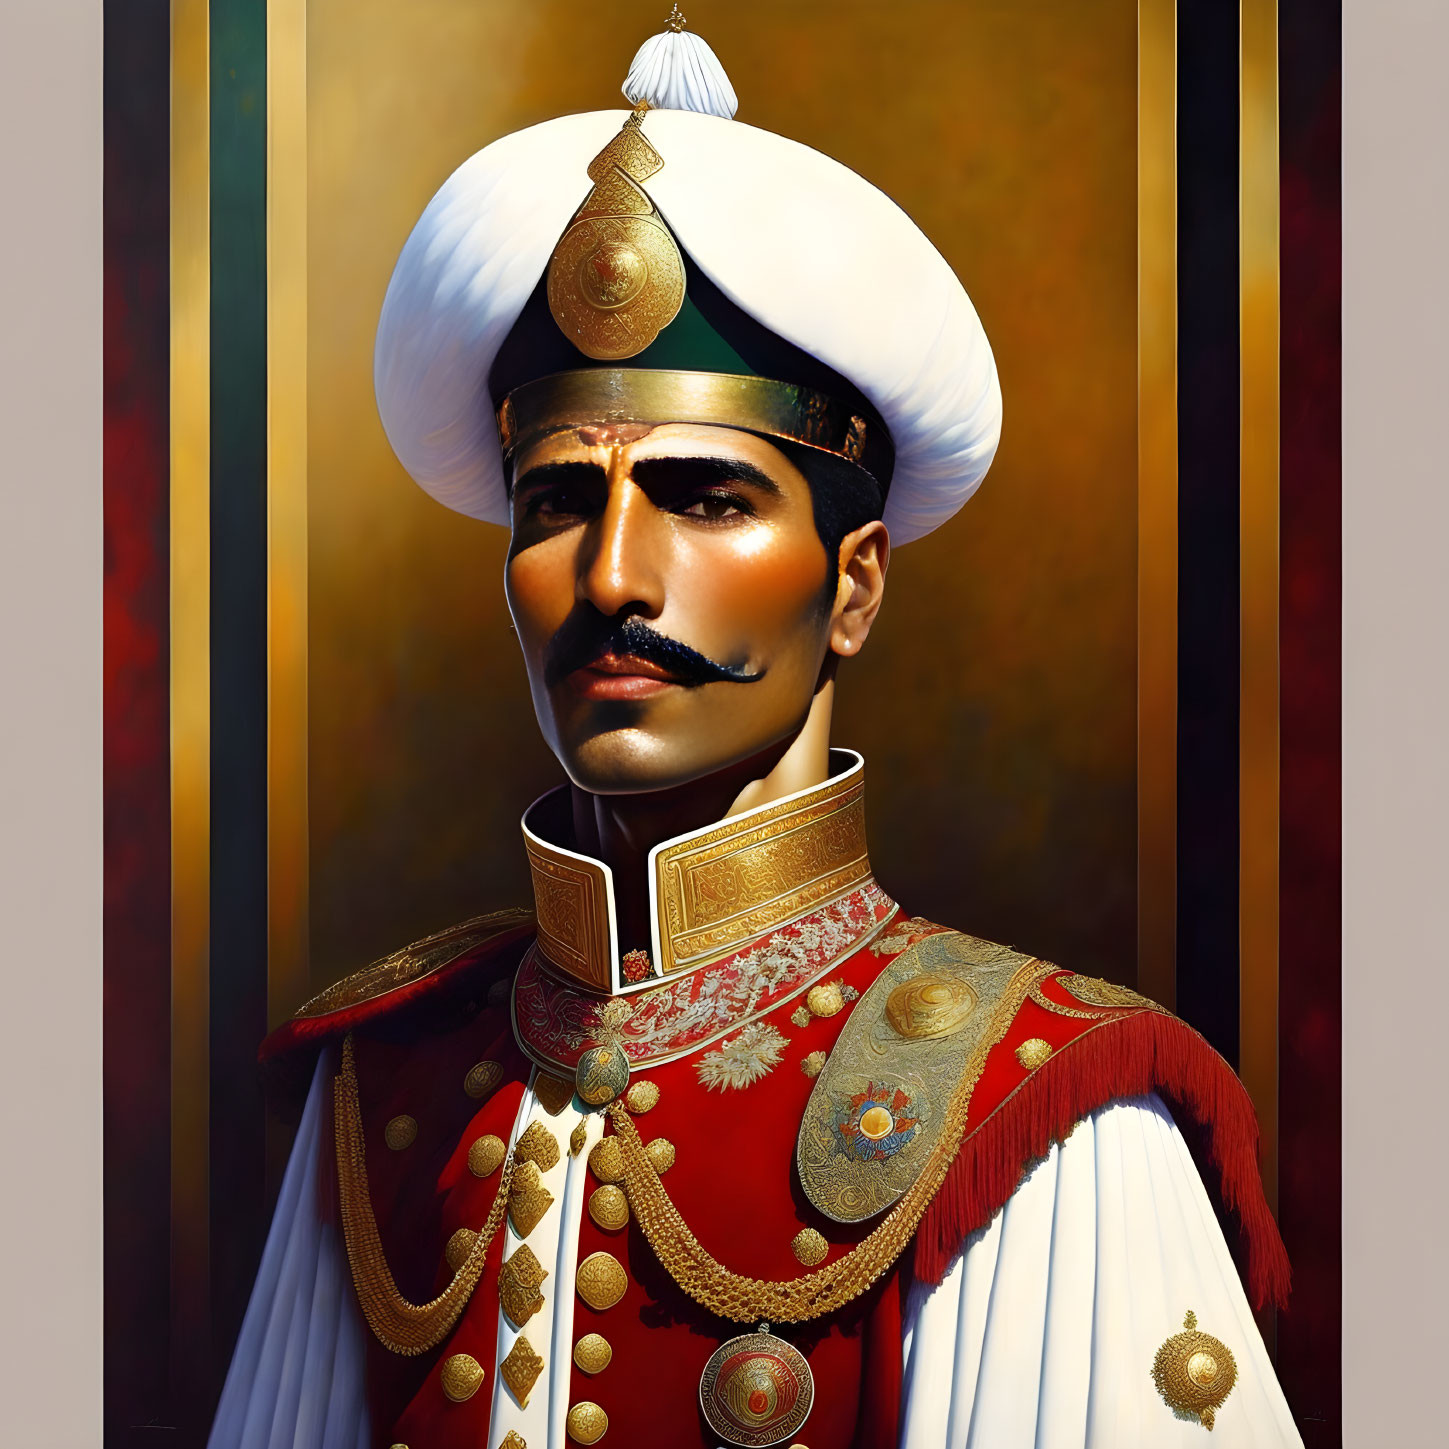 Ottoman solider